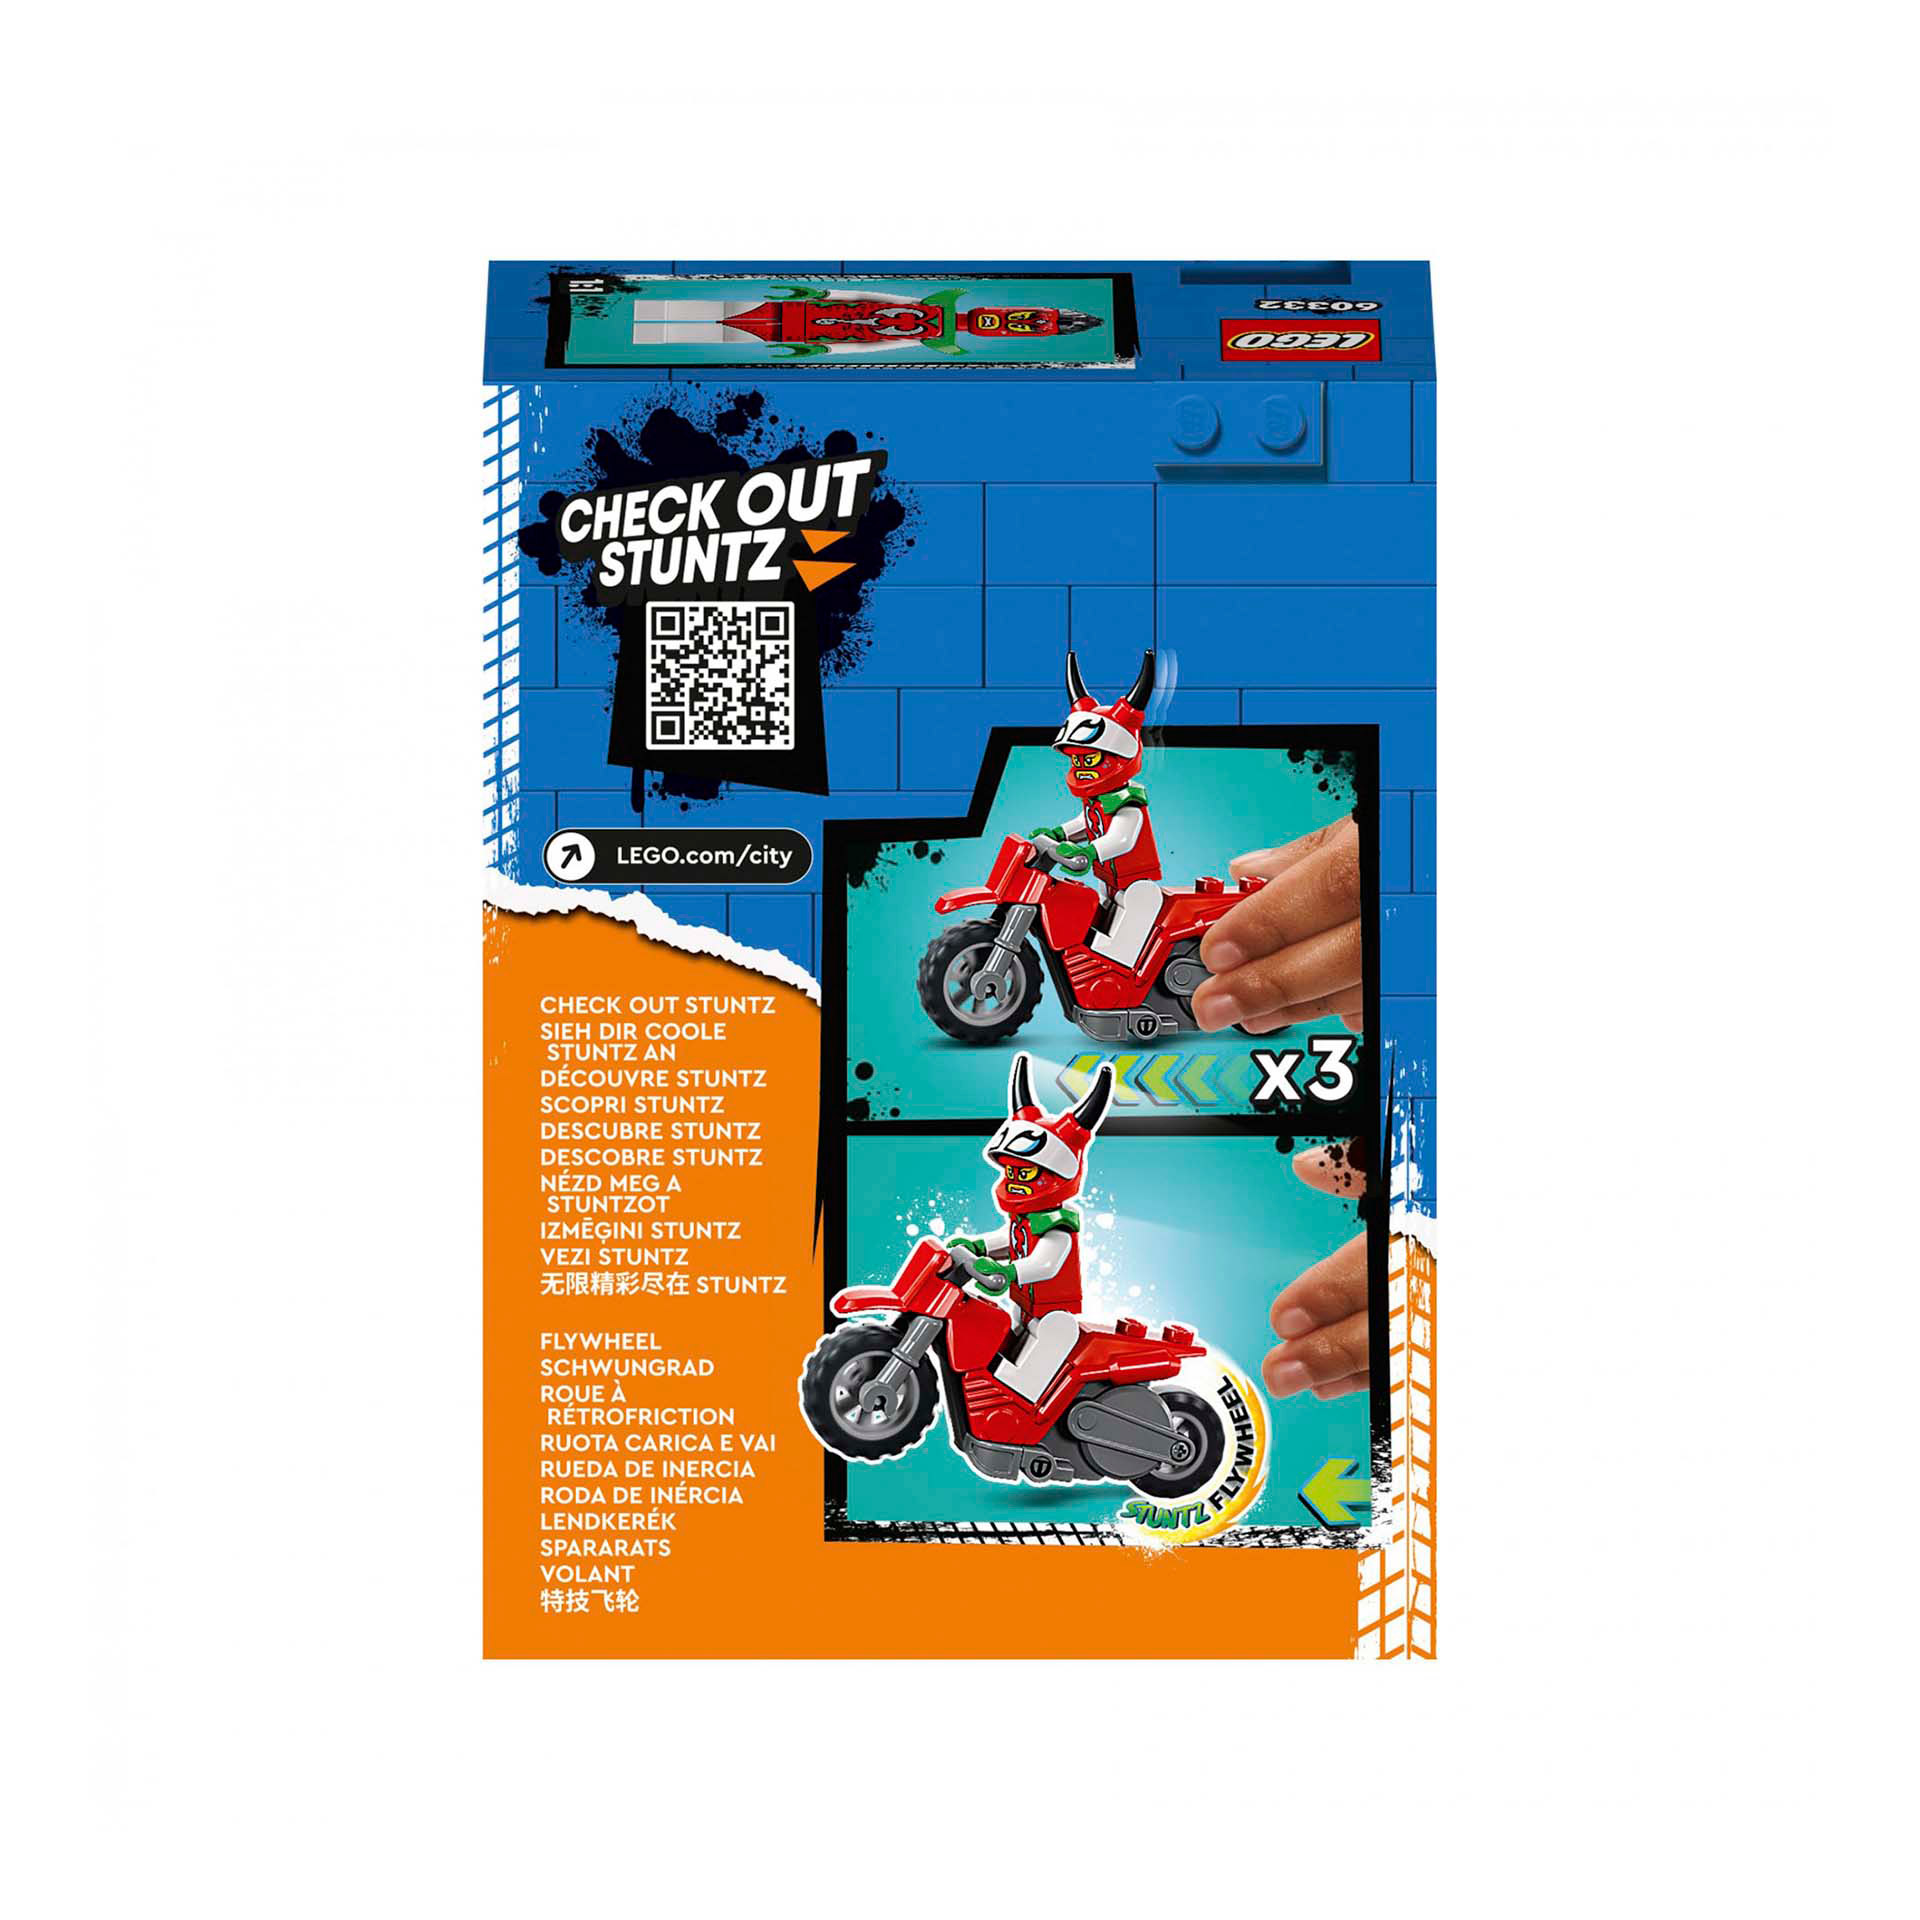 LEGO City Stuntz Stunt Bike? Scorpione Spericolato, Moto Giocattolo Carica e Vai 60332, , large